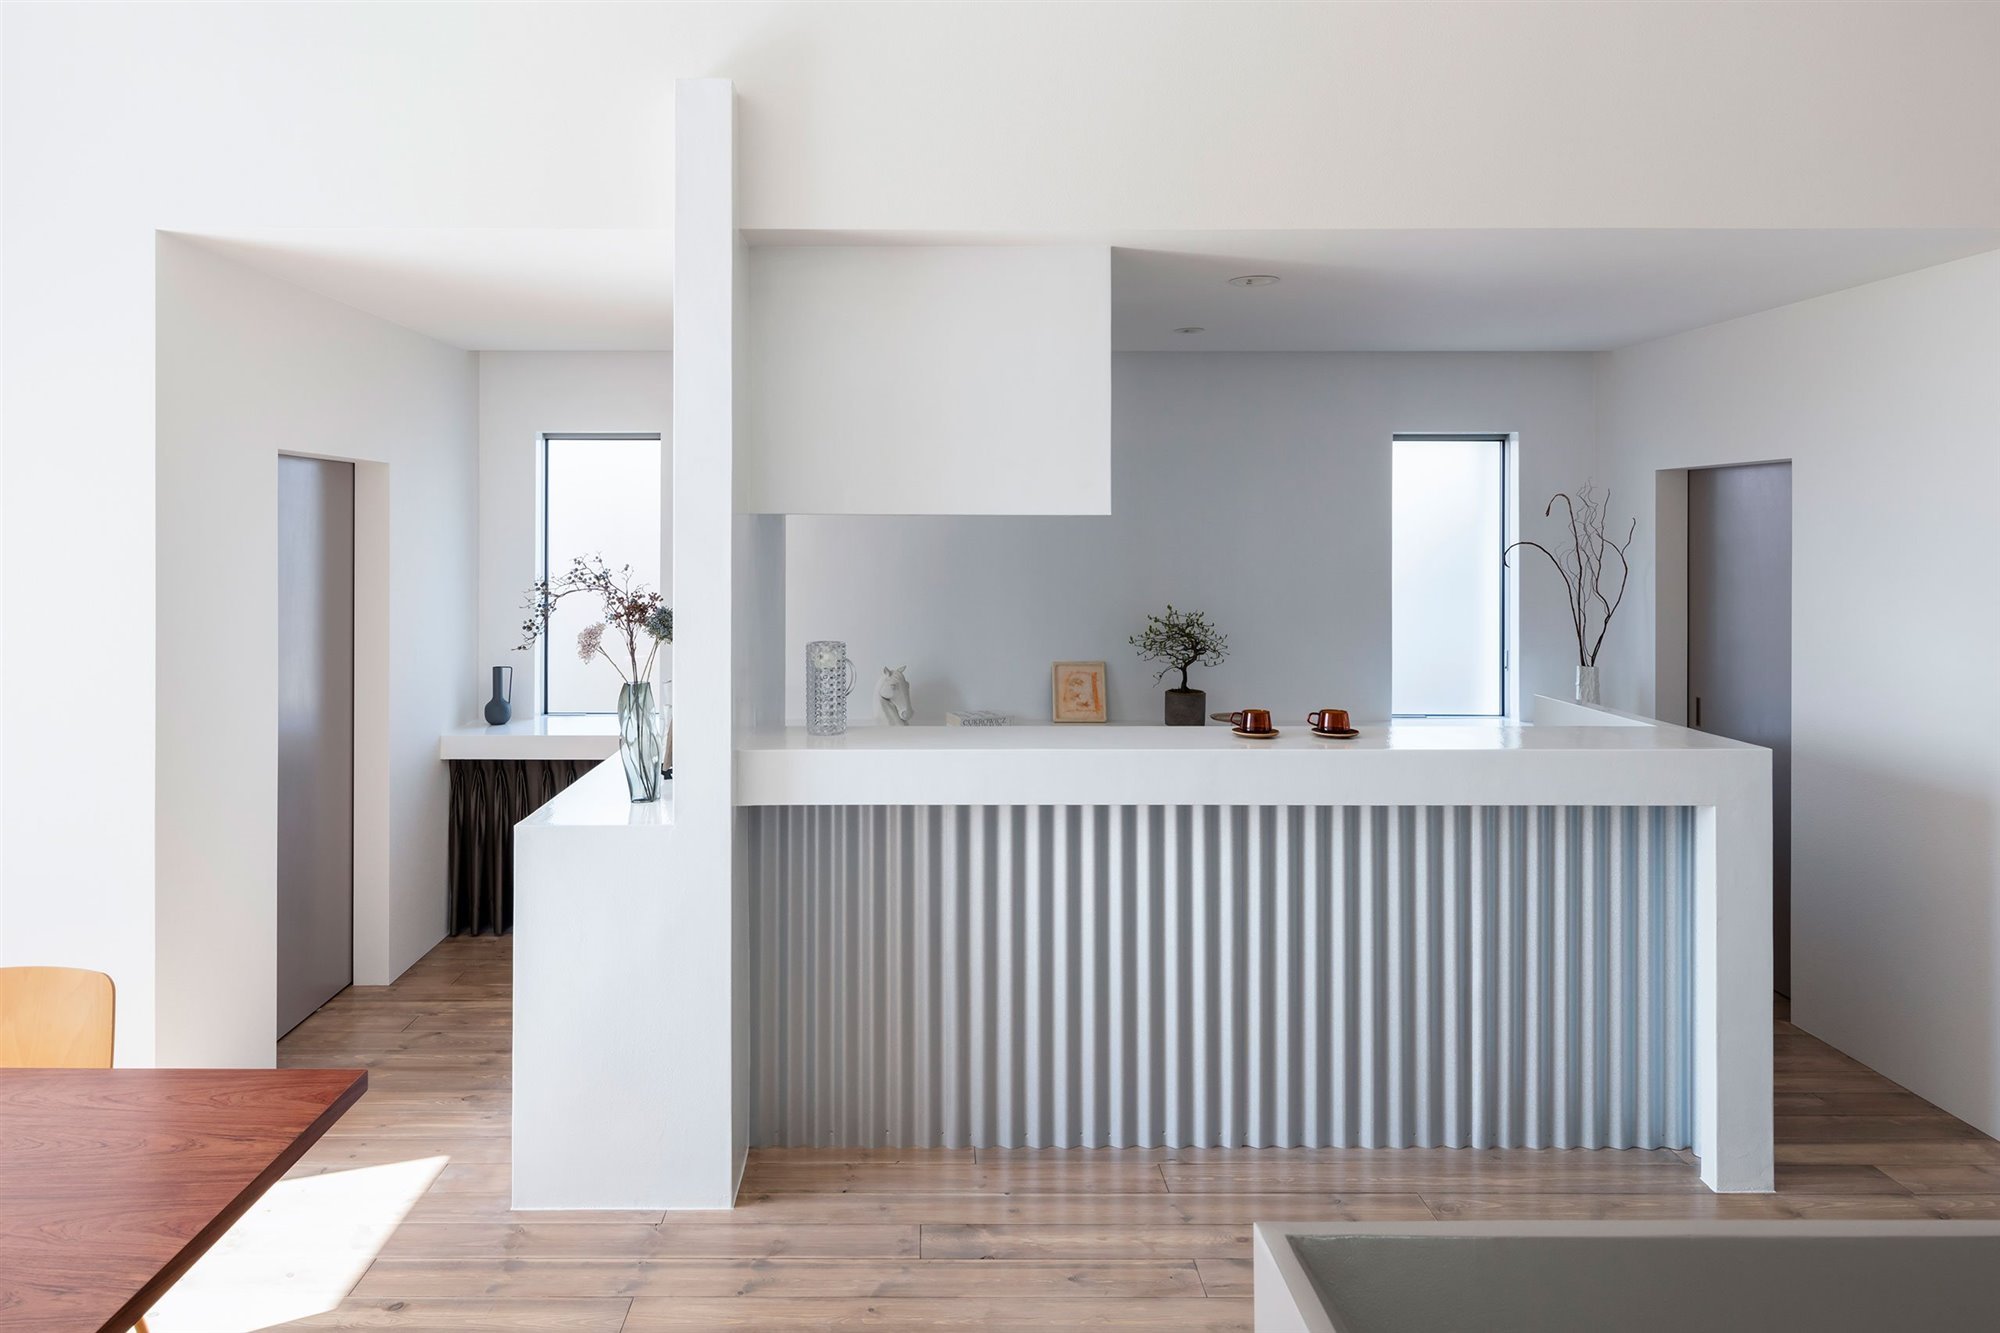 Casa moderna con decoracion de estilo minimalista en japon cocina en isla